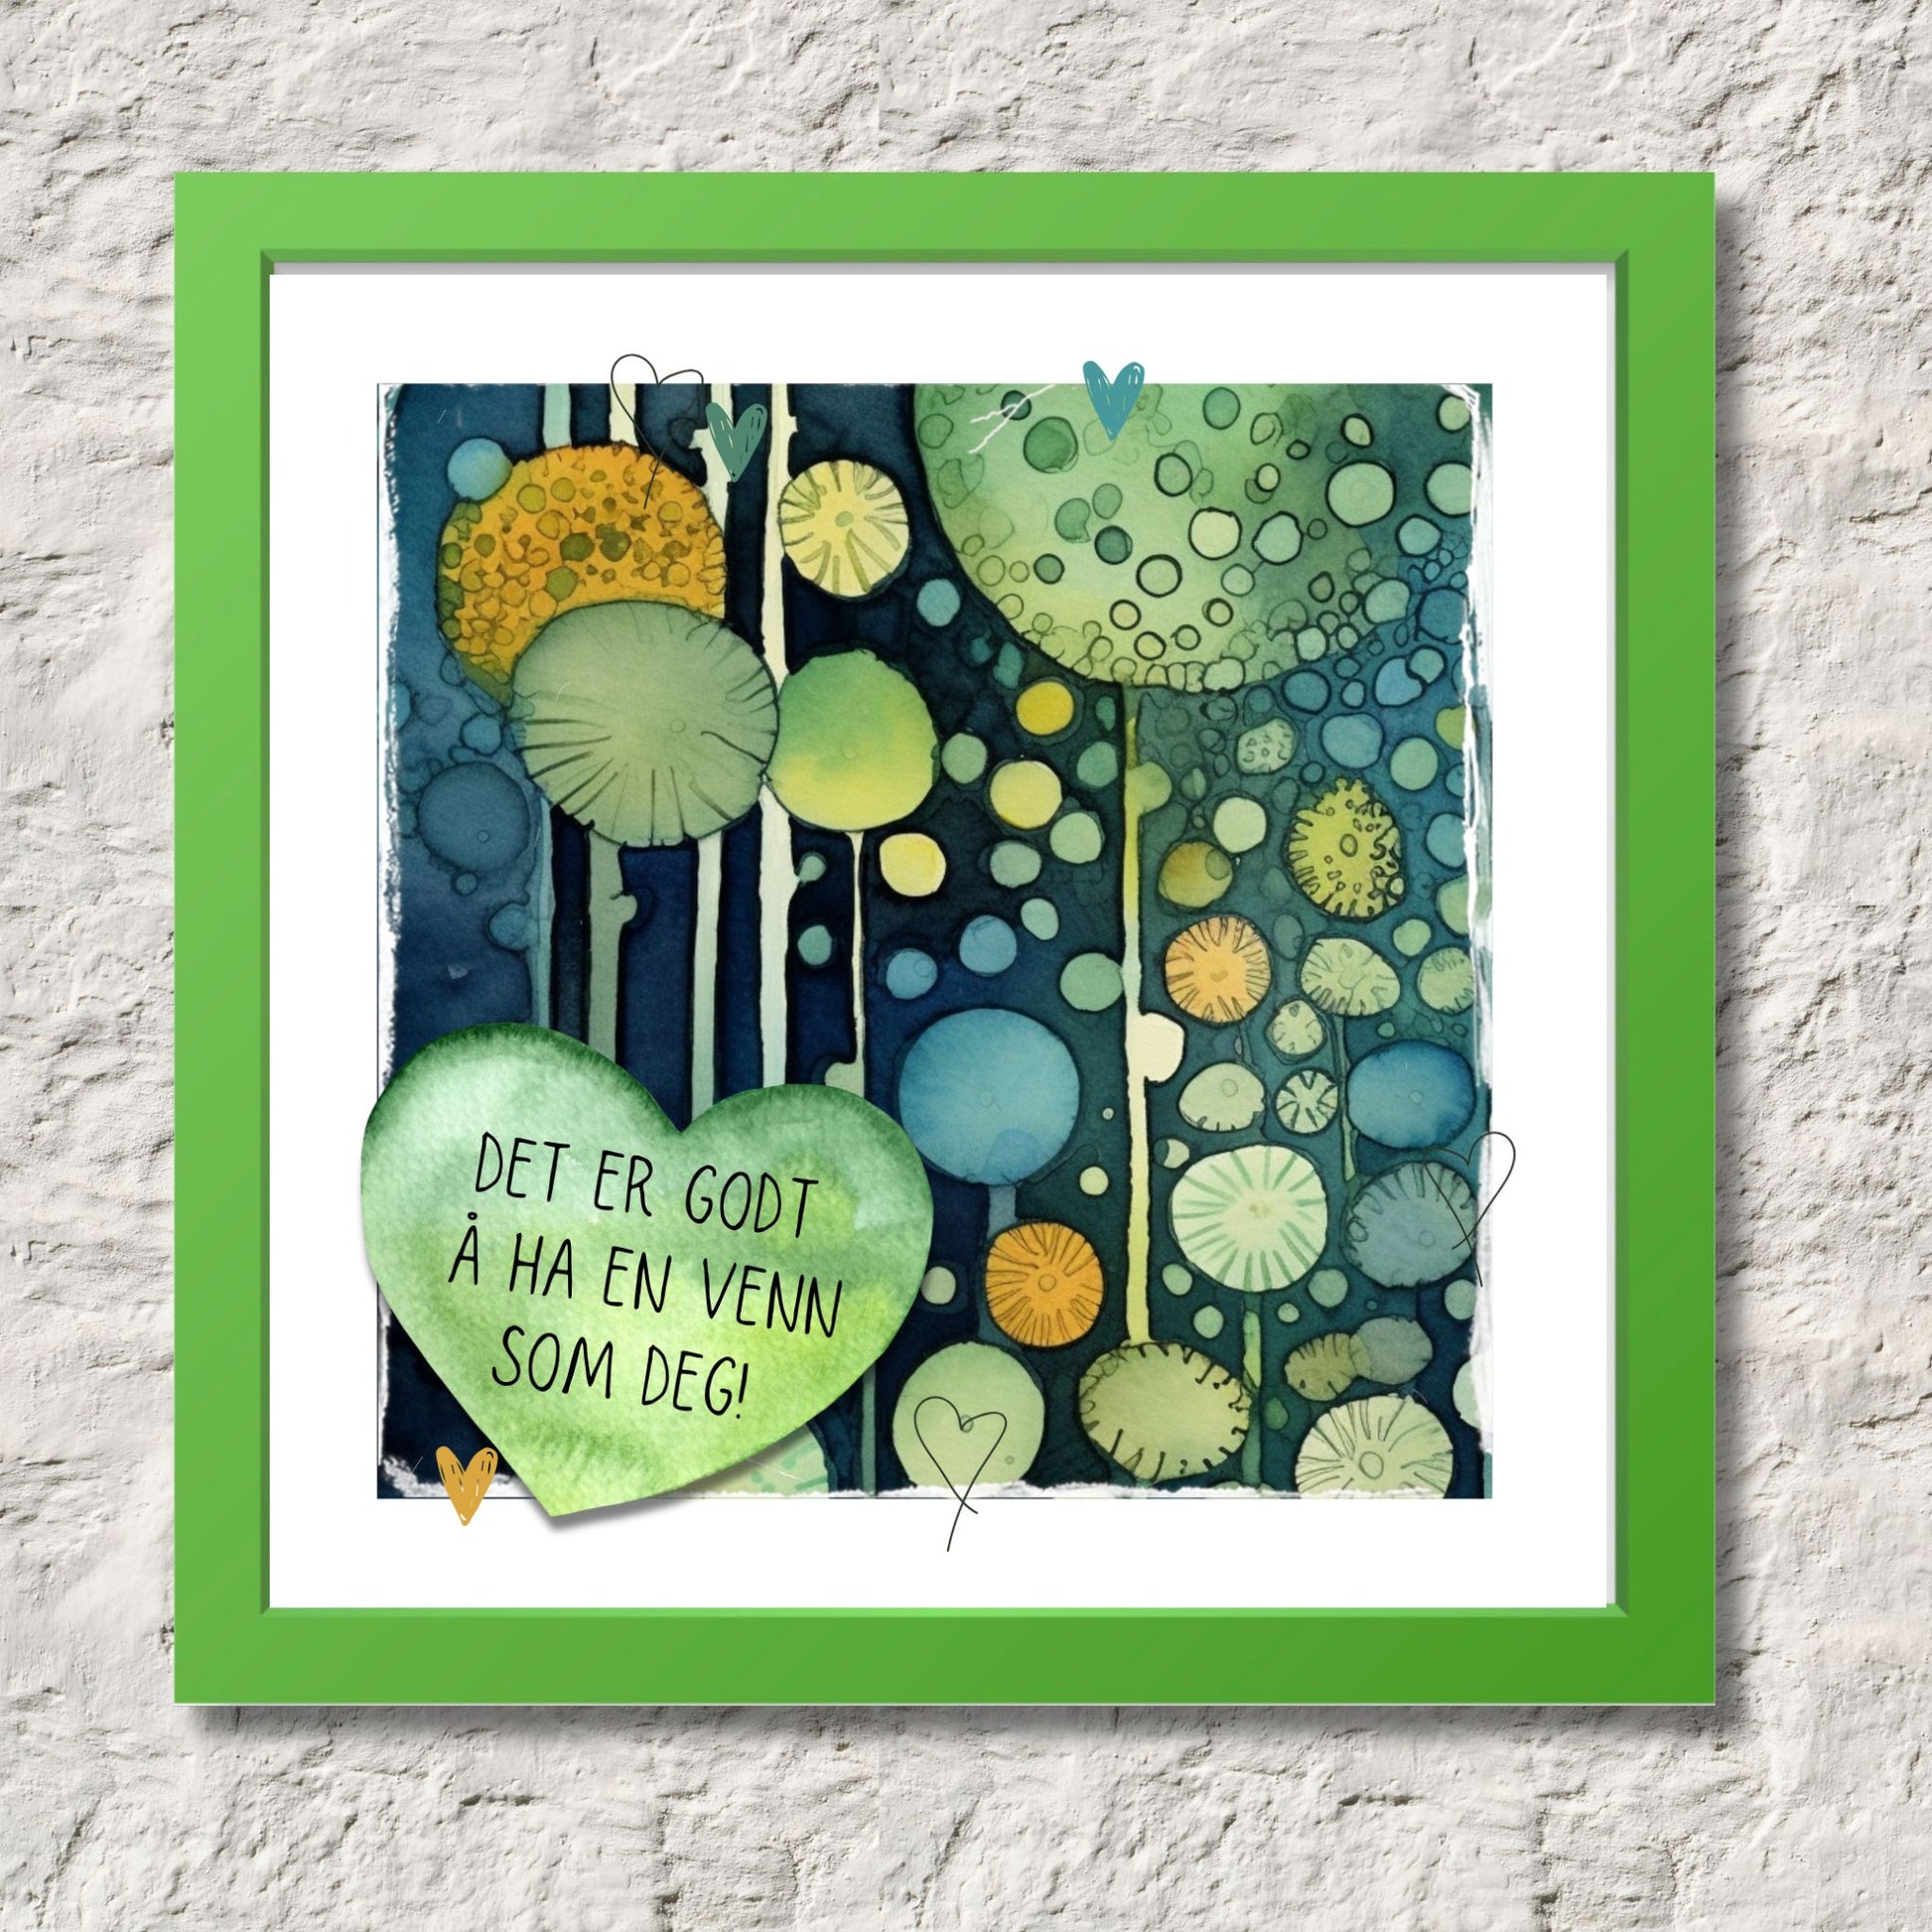 Plakat med tekst "Det er godt å ha en venn som deg" - og et motiv med farger i grønn, blått og oransje. Med hvit kant på 1,5 cm. Illustrasjon viser plakat i grønn ramme.